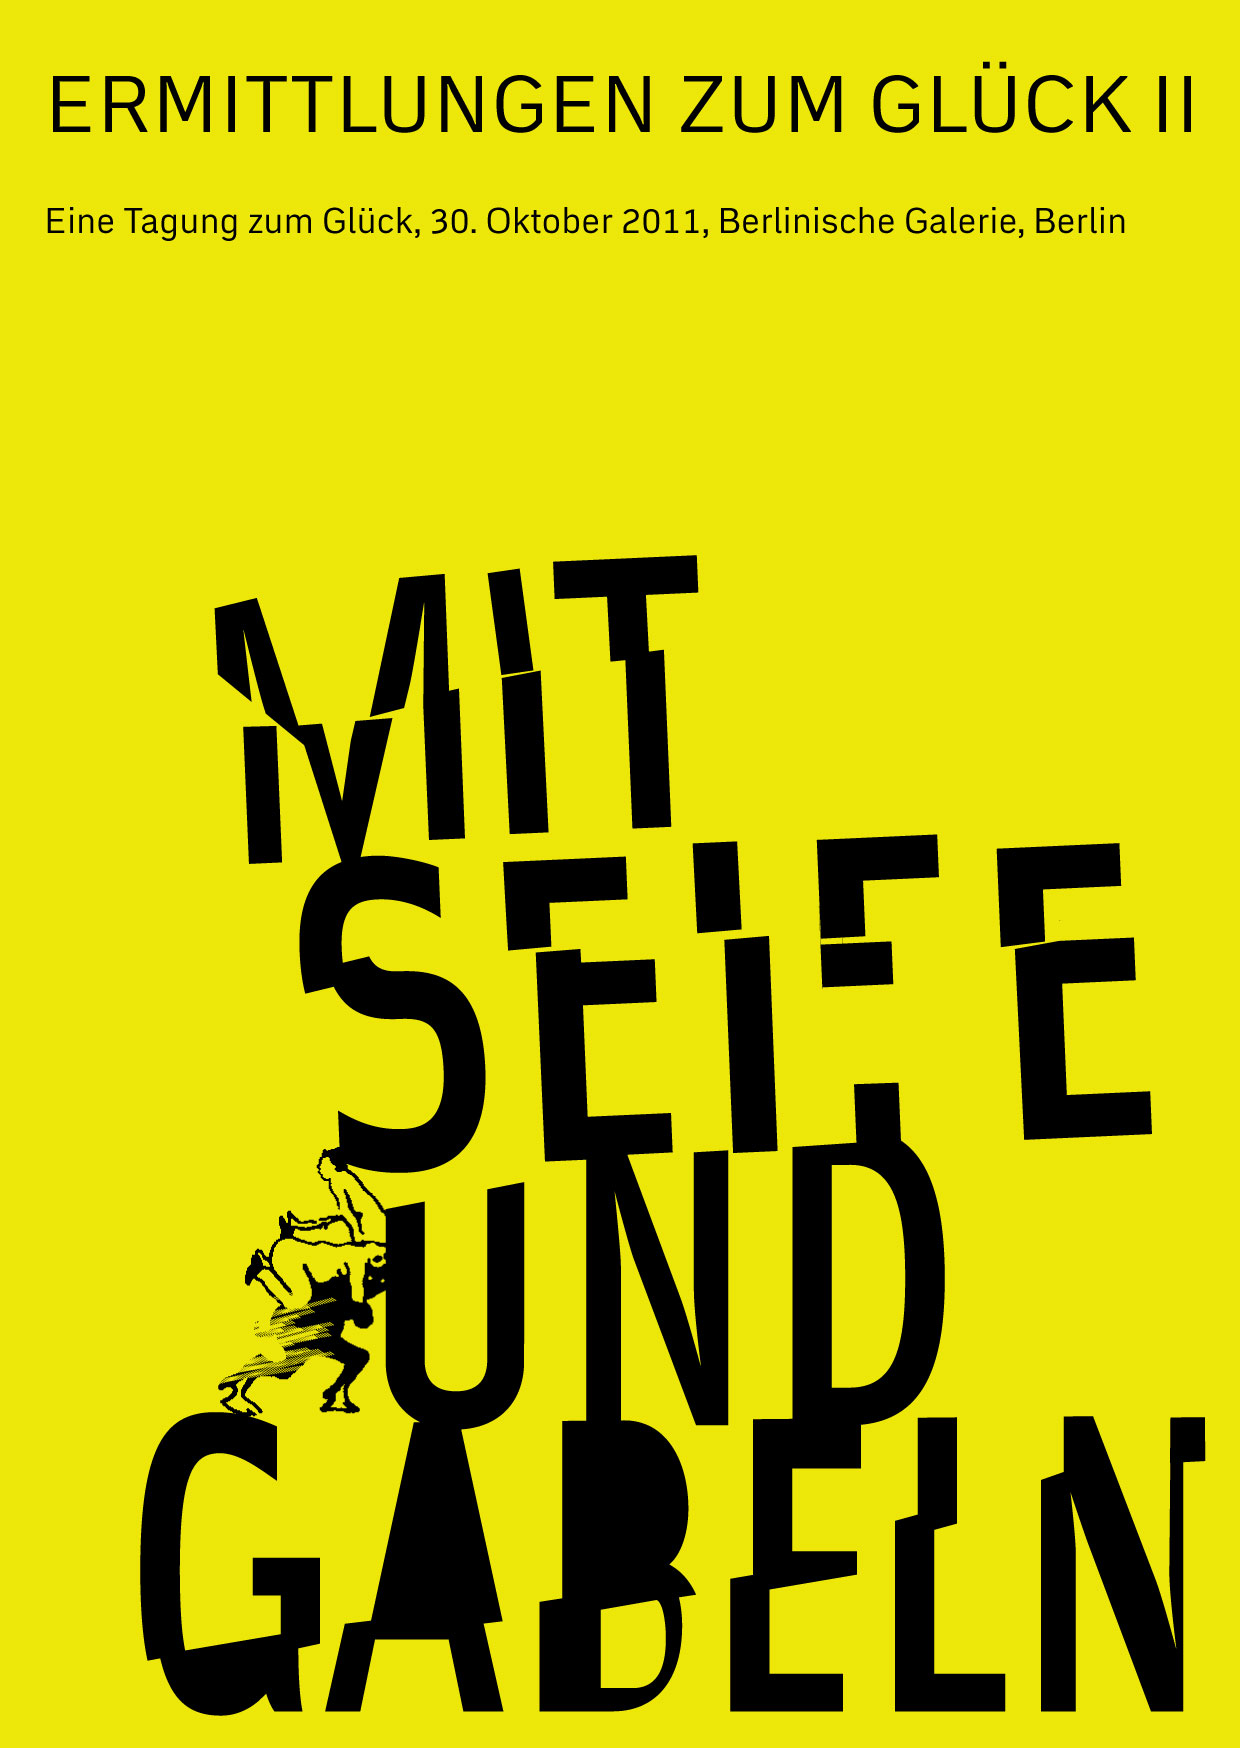 Mit Seife und Gabeln – Ermittlungen zum Glück II, Bild: Eine Tagung zum Glück. Berlin 30.10.2011..